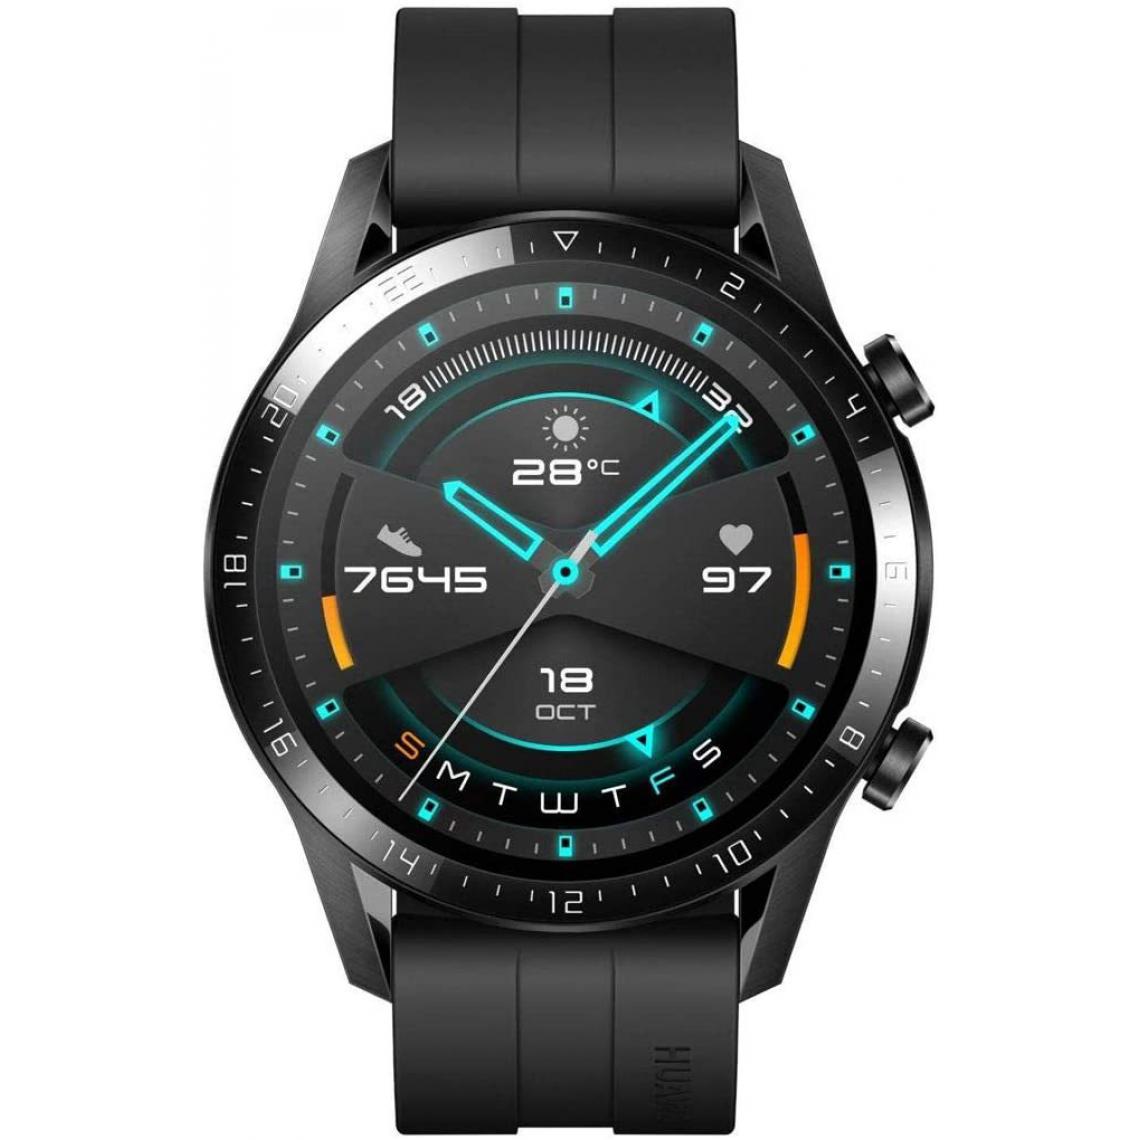 Chrono - HUAWEI Watch GT 2(46mm) Montre Connectée, Autonomie de 2 Semaine, GPS Intégré, 15 Modes de Sport, Suivi du Rythme Cardiaque en Temps Réel, Appels Bluetooth,Sport Noir - Montre connectée